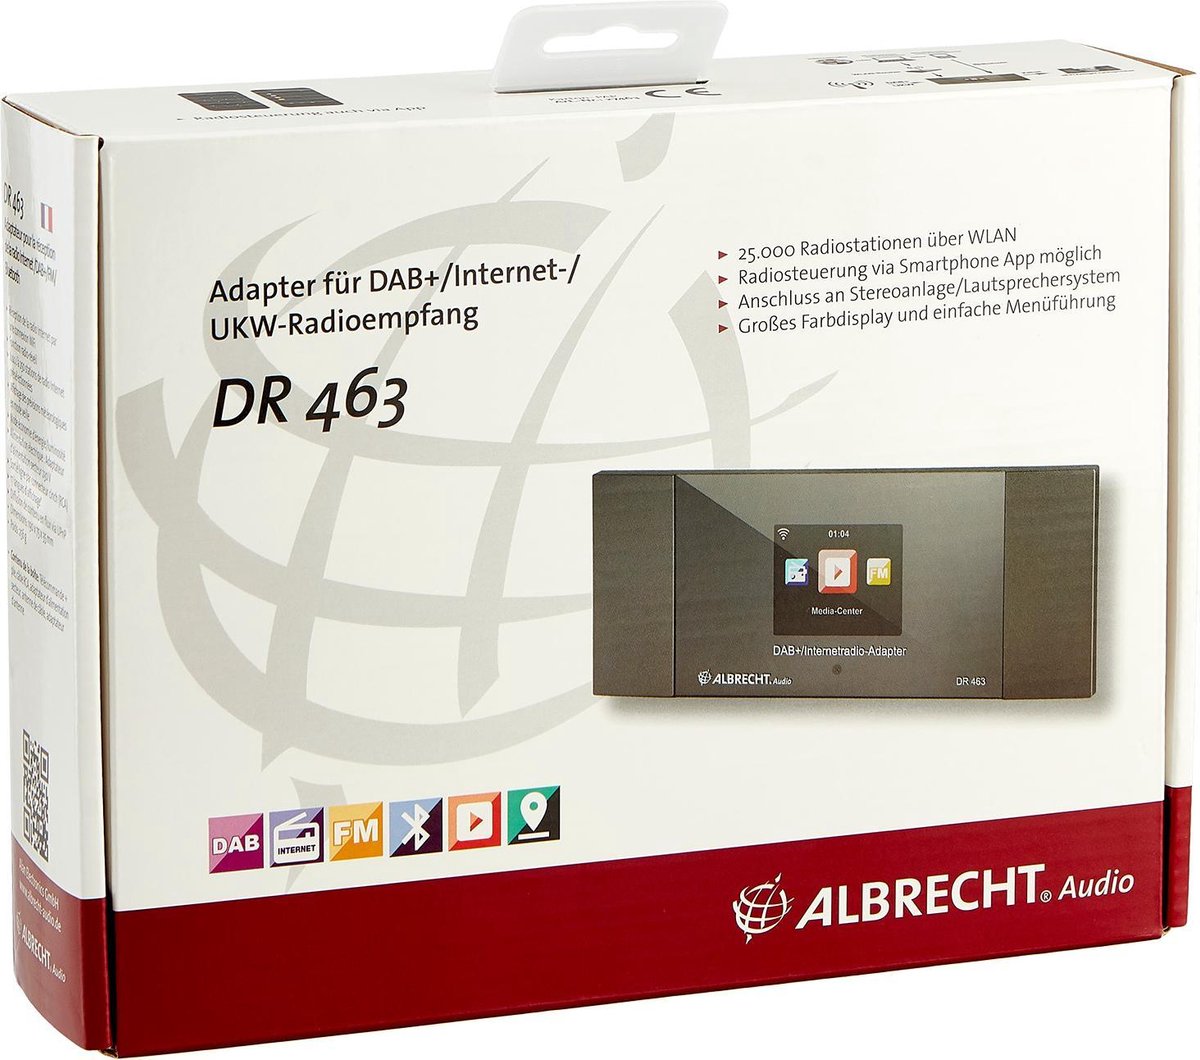 Albrecht DR 463: Neuer Internetradio/DAB+ Adapter für jede HiFi-Anlage -  Profil-Marketing